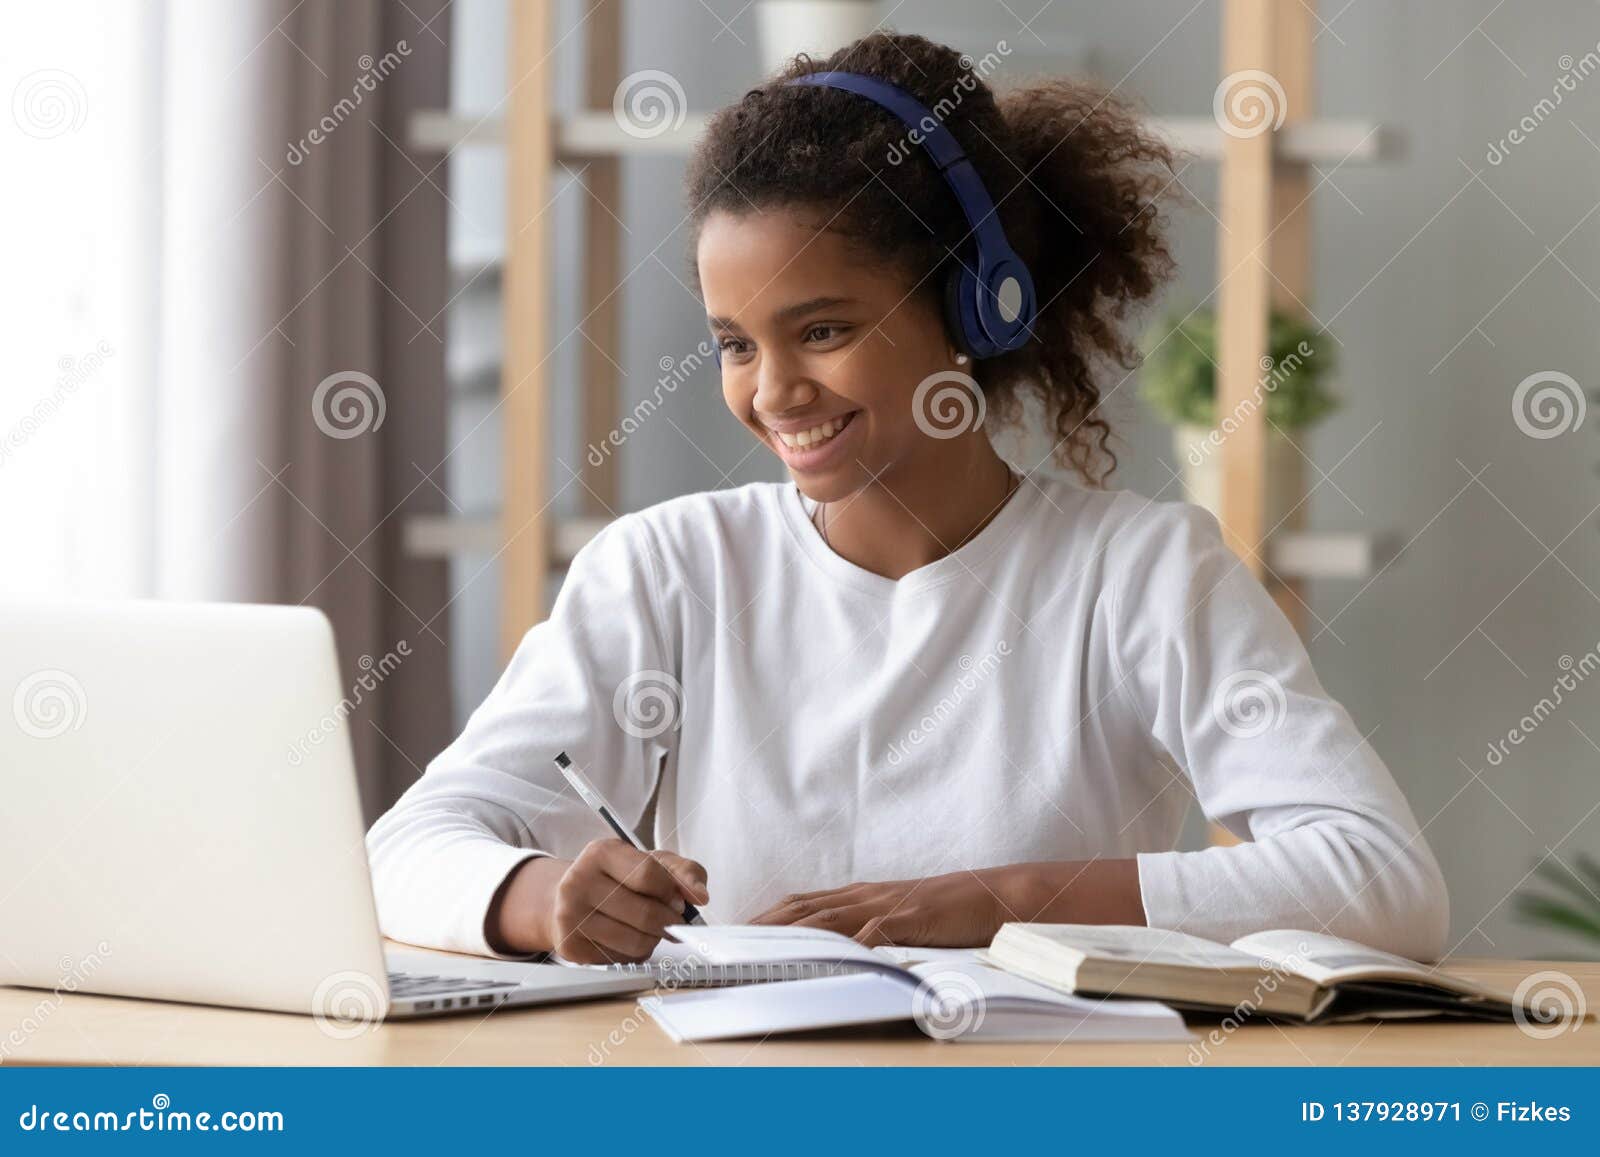 happy black pupil in headphones doing school homework